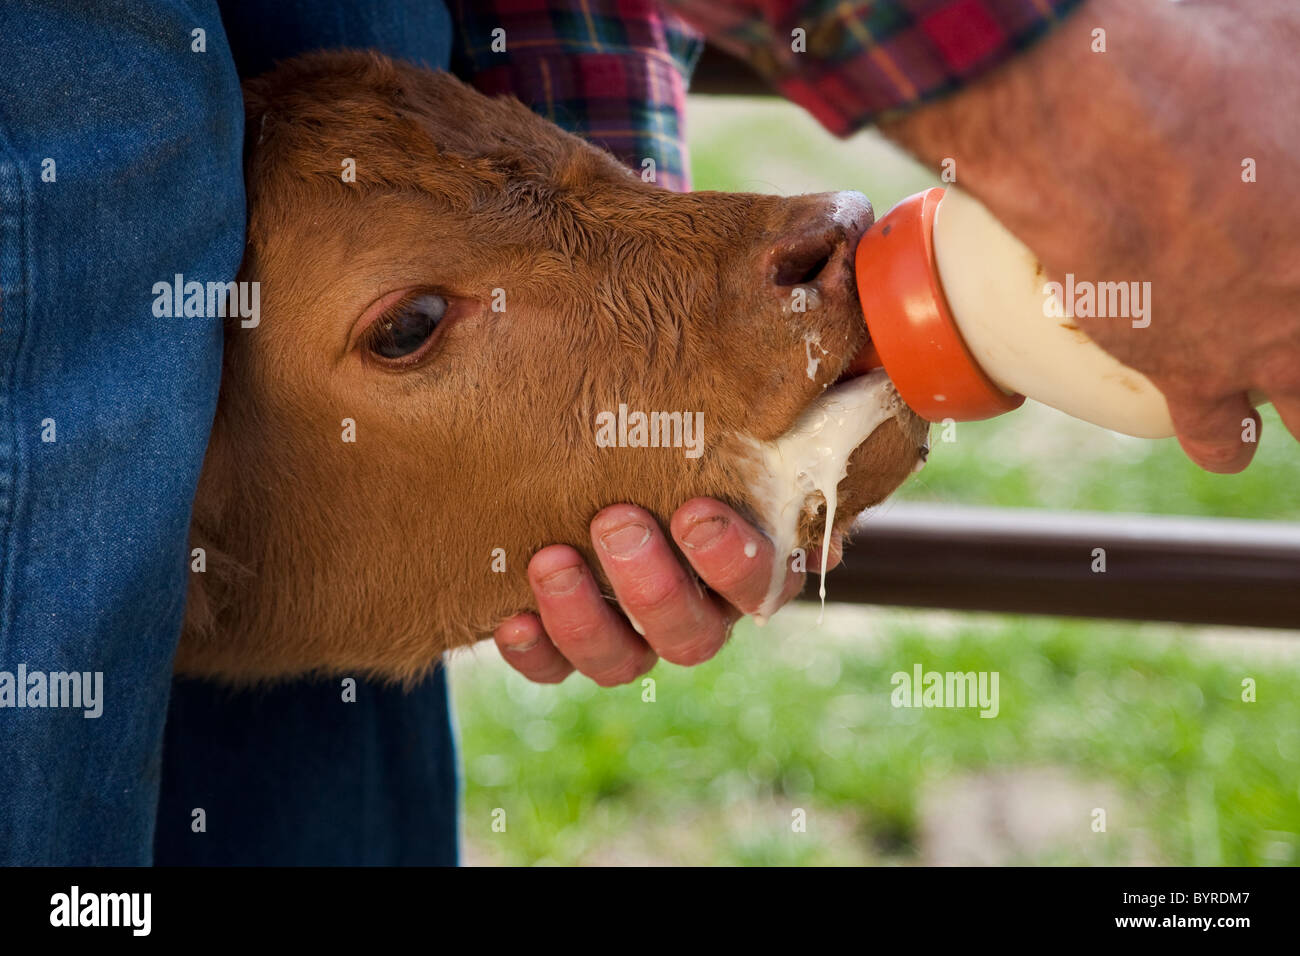 Éleveur de bétail - nourrir un veau contre une bouteille de formule mixte / Childress, Texas, USA. Banque D'Images